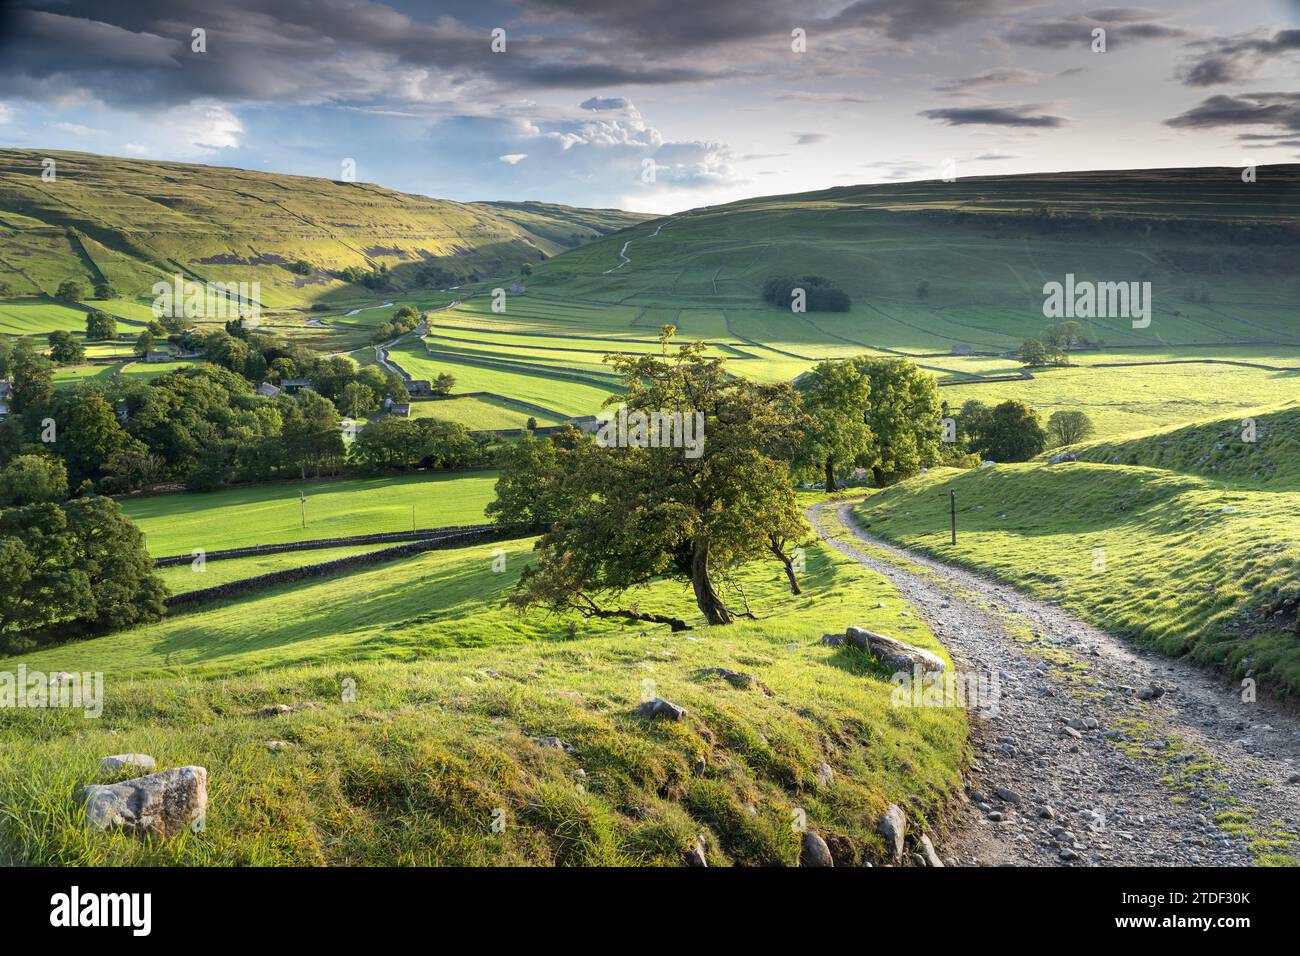 Pueblo de Arncliffe rodeado de muros de piedra seca y campos verdes, Littondale, los valles de Yorkshire, Yorkshire, Inglaterra, Reino Unido, Europa Foto de stock